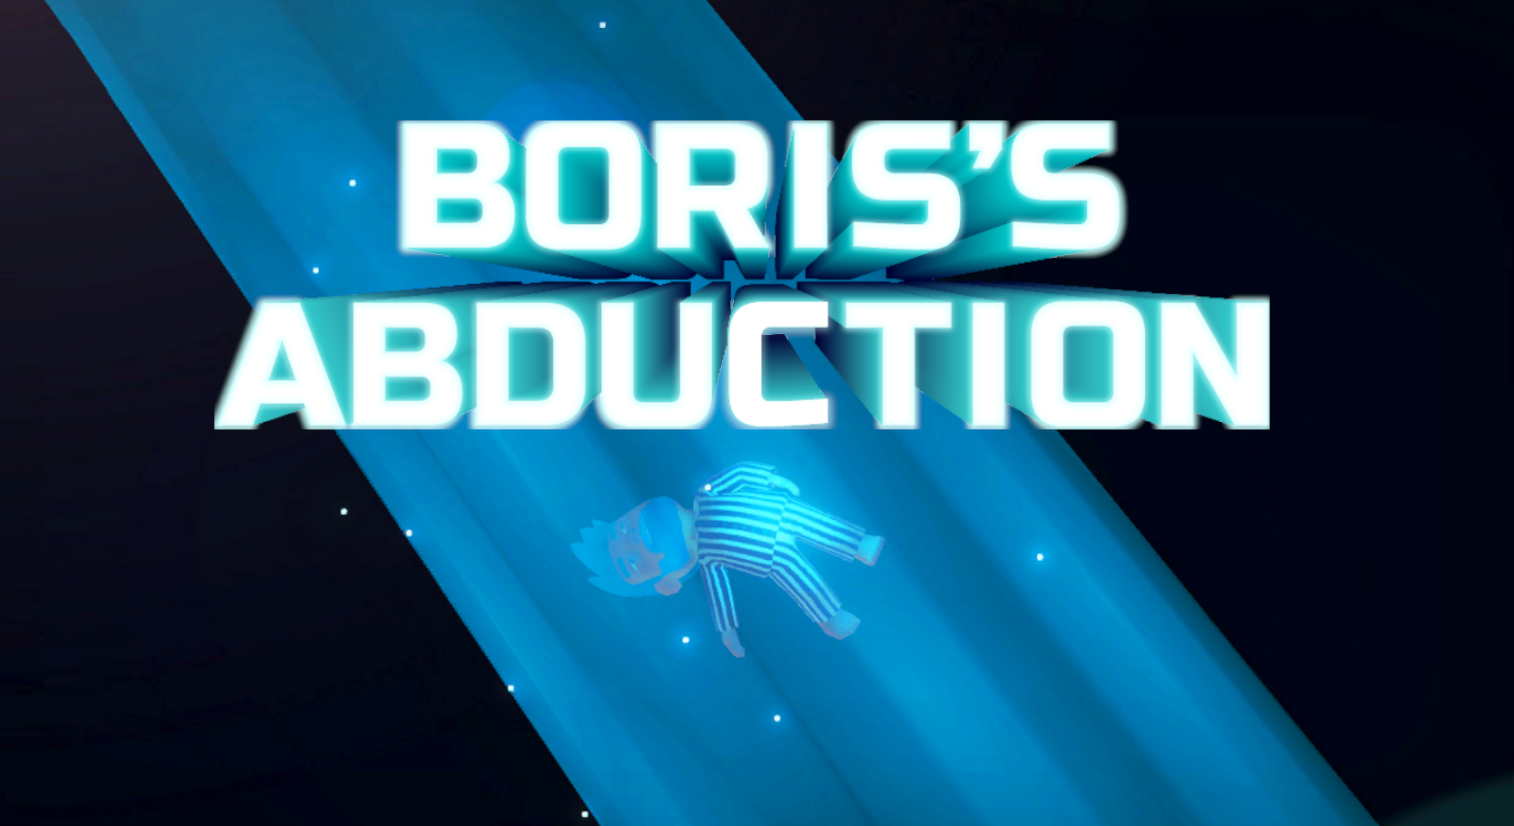 Boris's Abduction